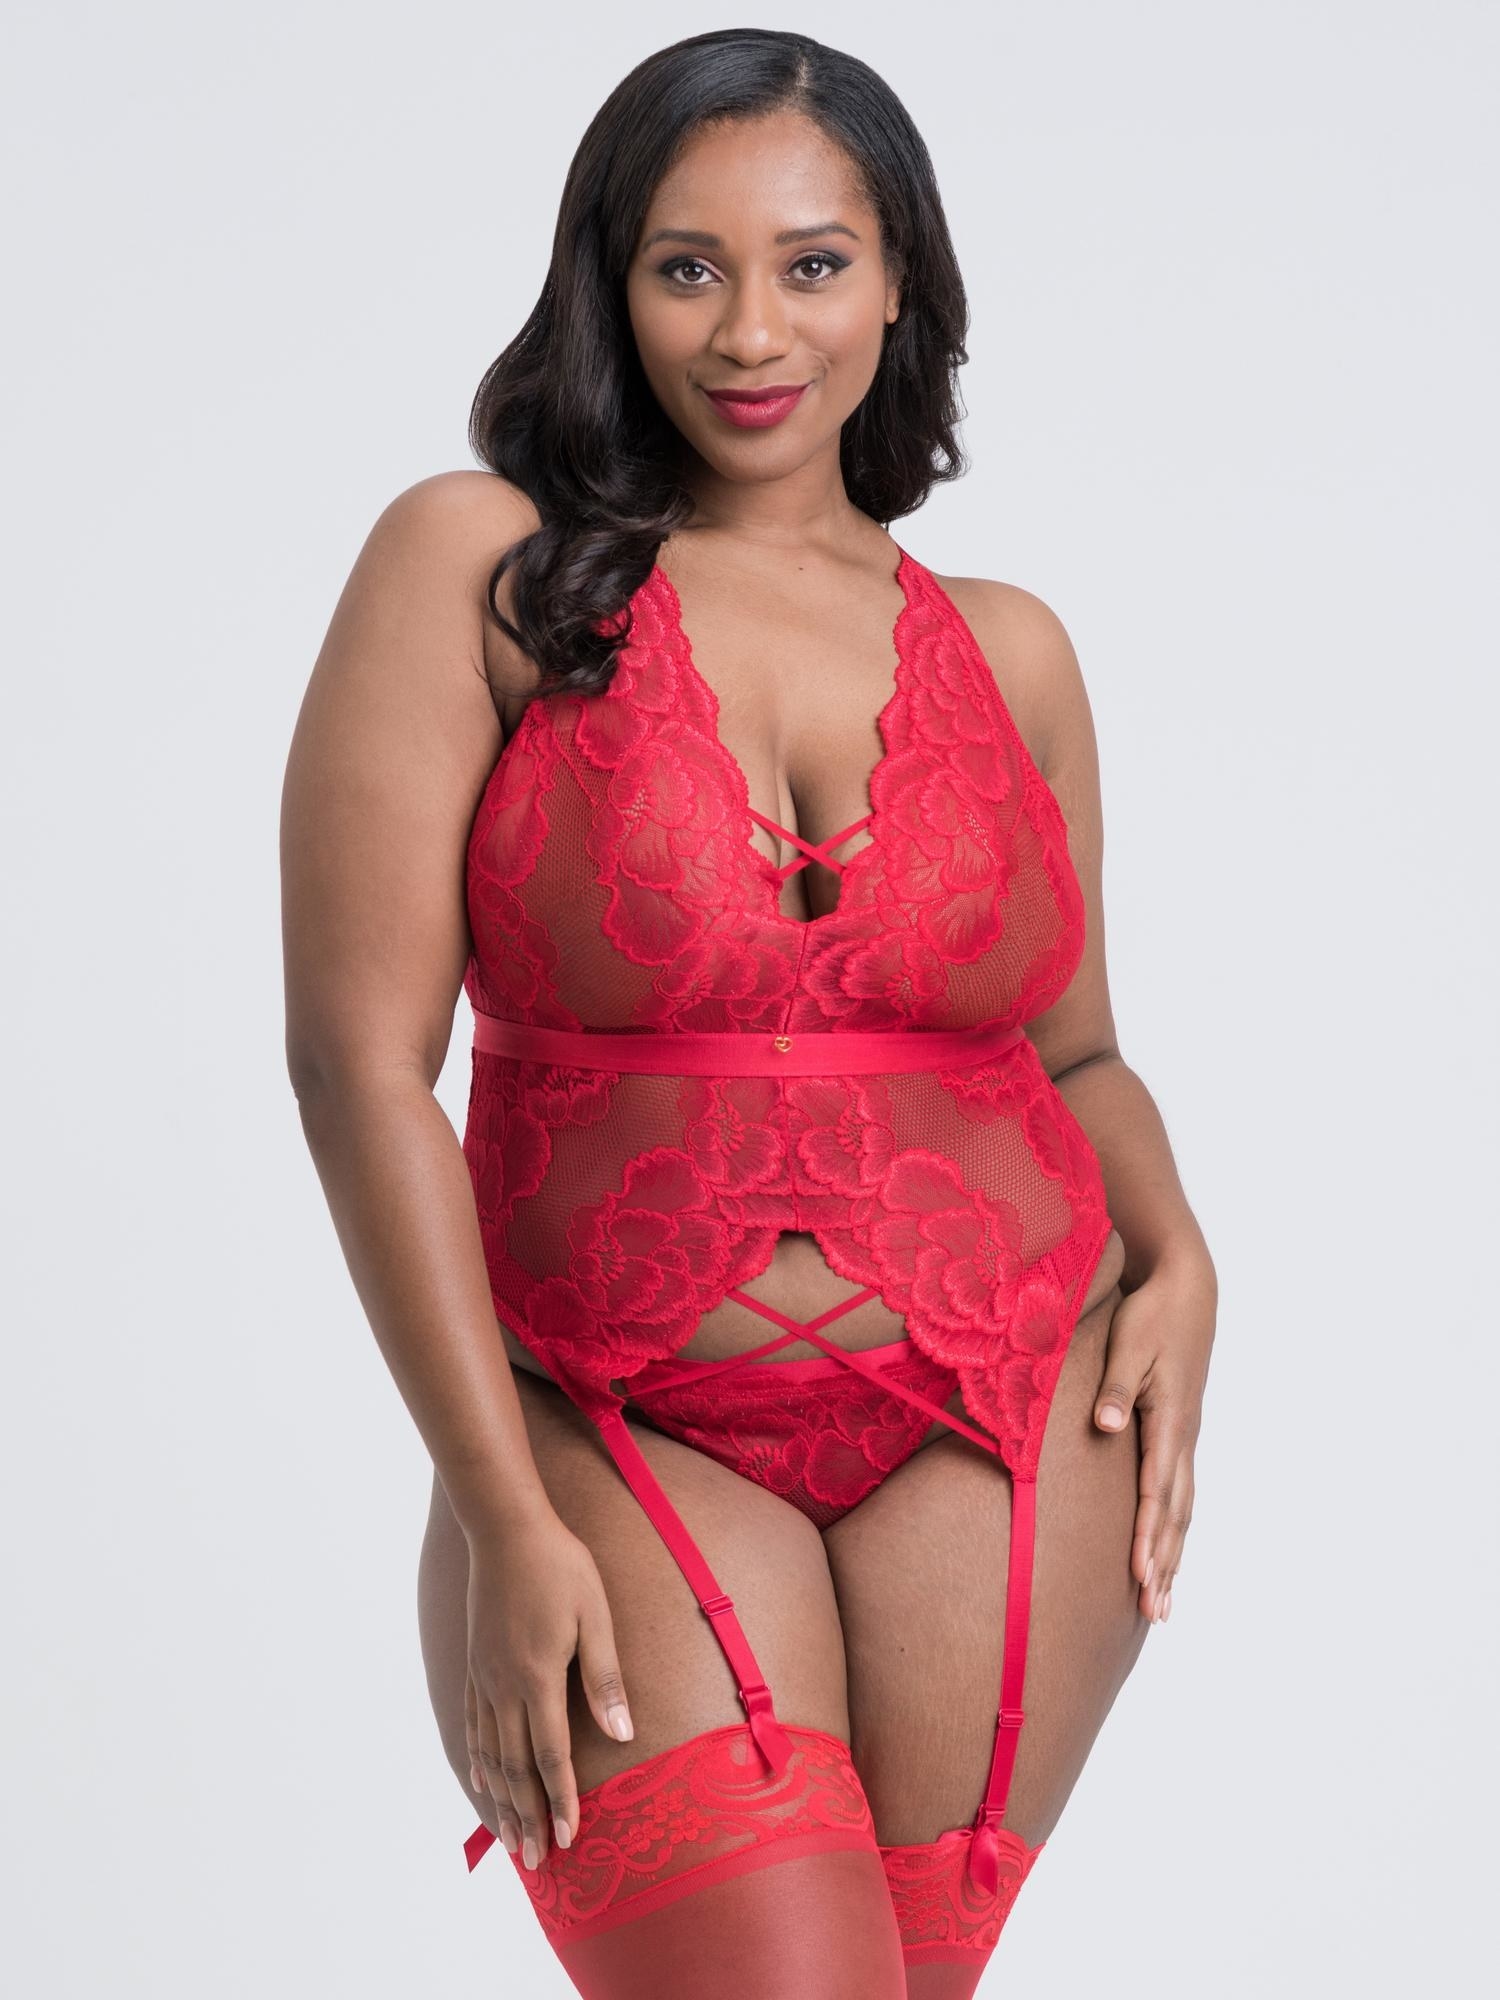 model in red lingerie set